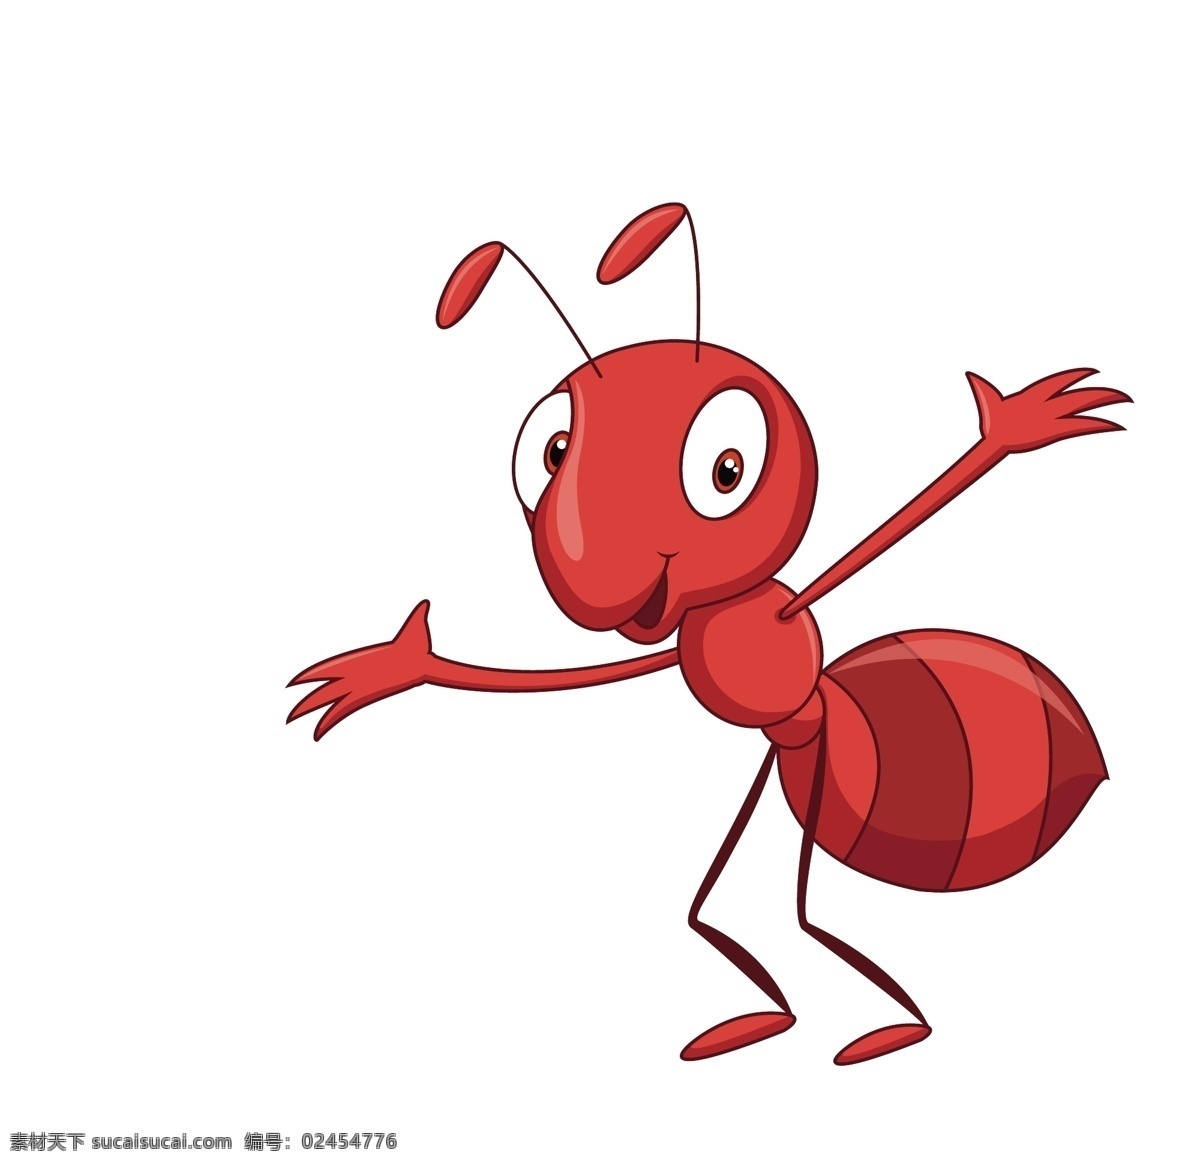 矢量 蚂蚁 蝴蝶 蜘蛛 昆虫 插画 卡通瓢虫 卡通动物漫画 昆虫世界 生物世界